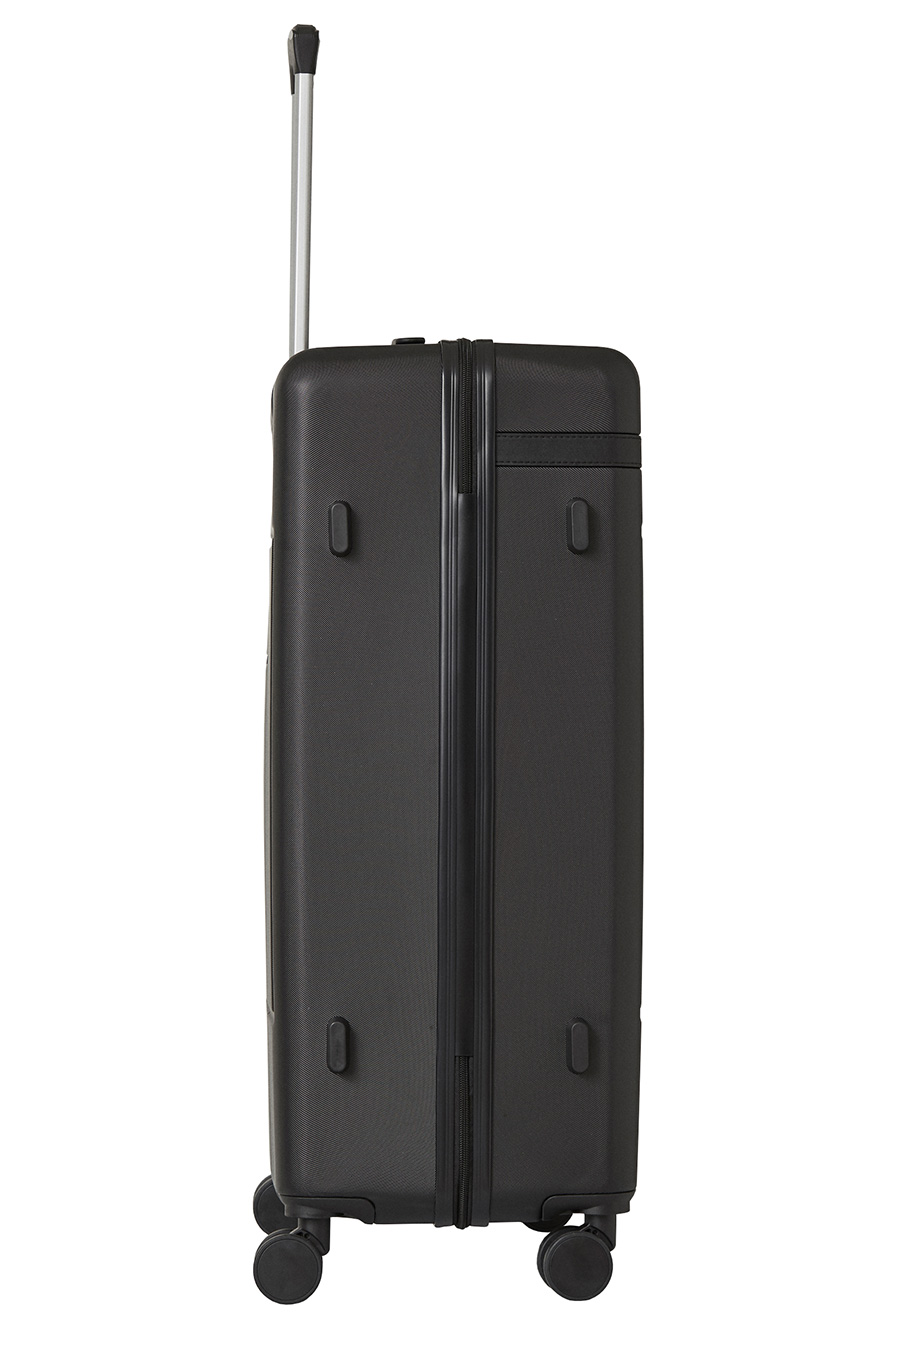 Travel suitcase CAT 84480-01